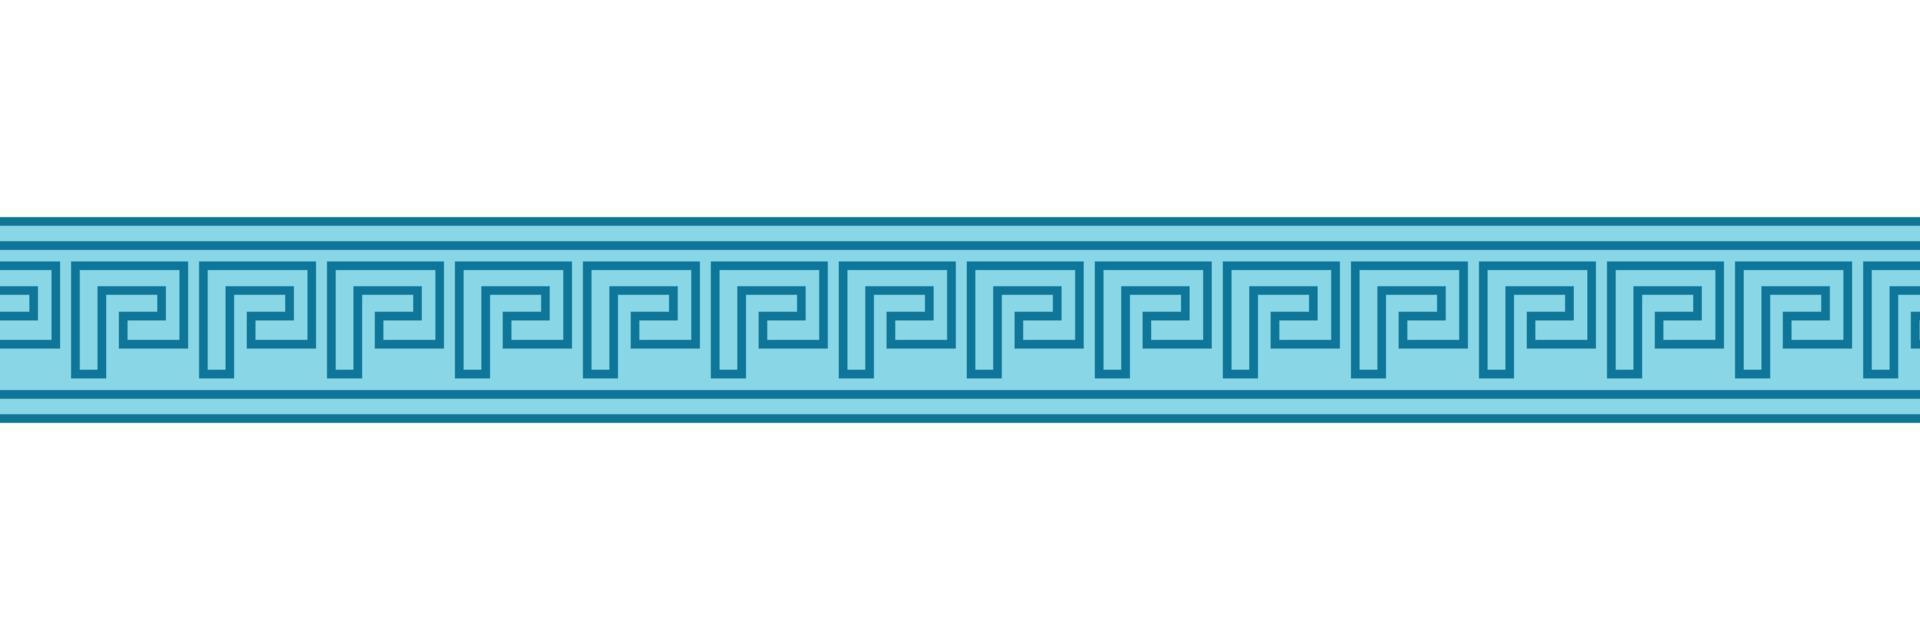 patrones de meandro sin fisuras. meandros griegos, traste o clave. adorno para los bordes del estilo de la antigua grecia. ilustración vectorial vector